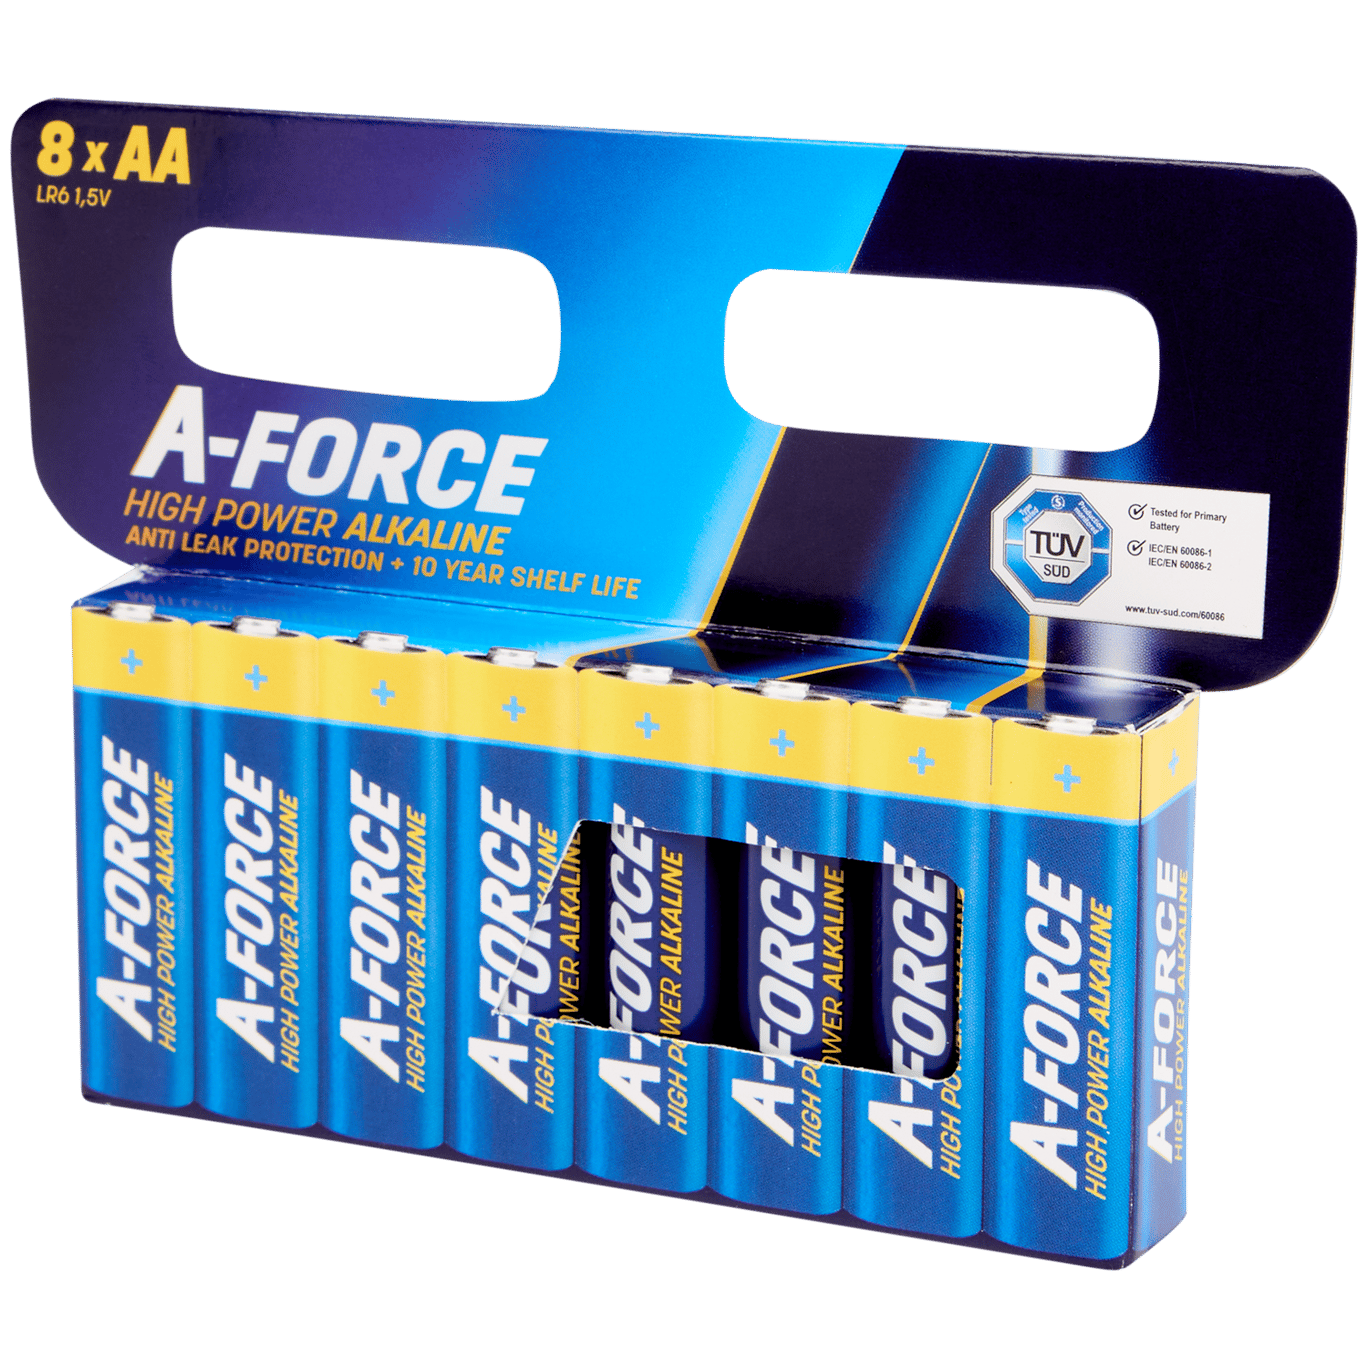 Baterie A-Force High Power Alkaline AA